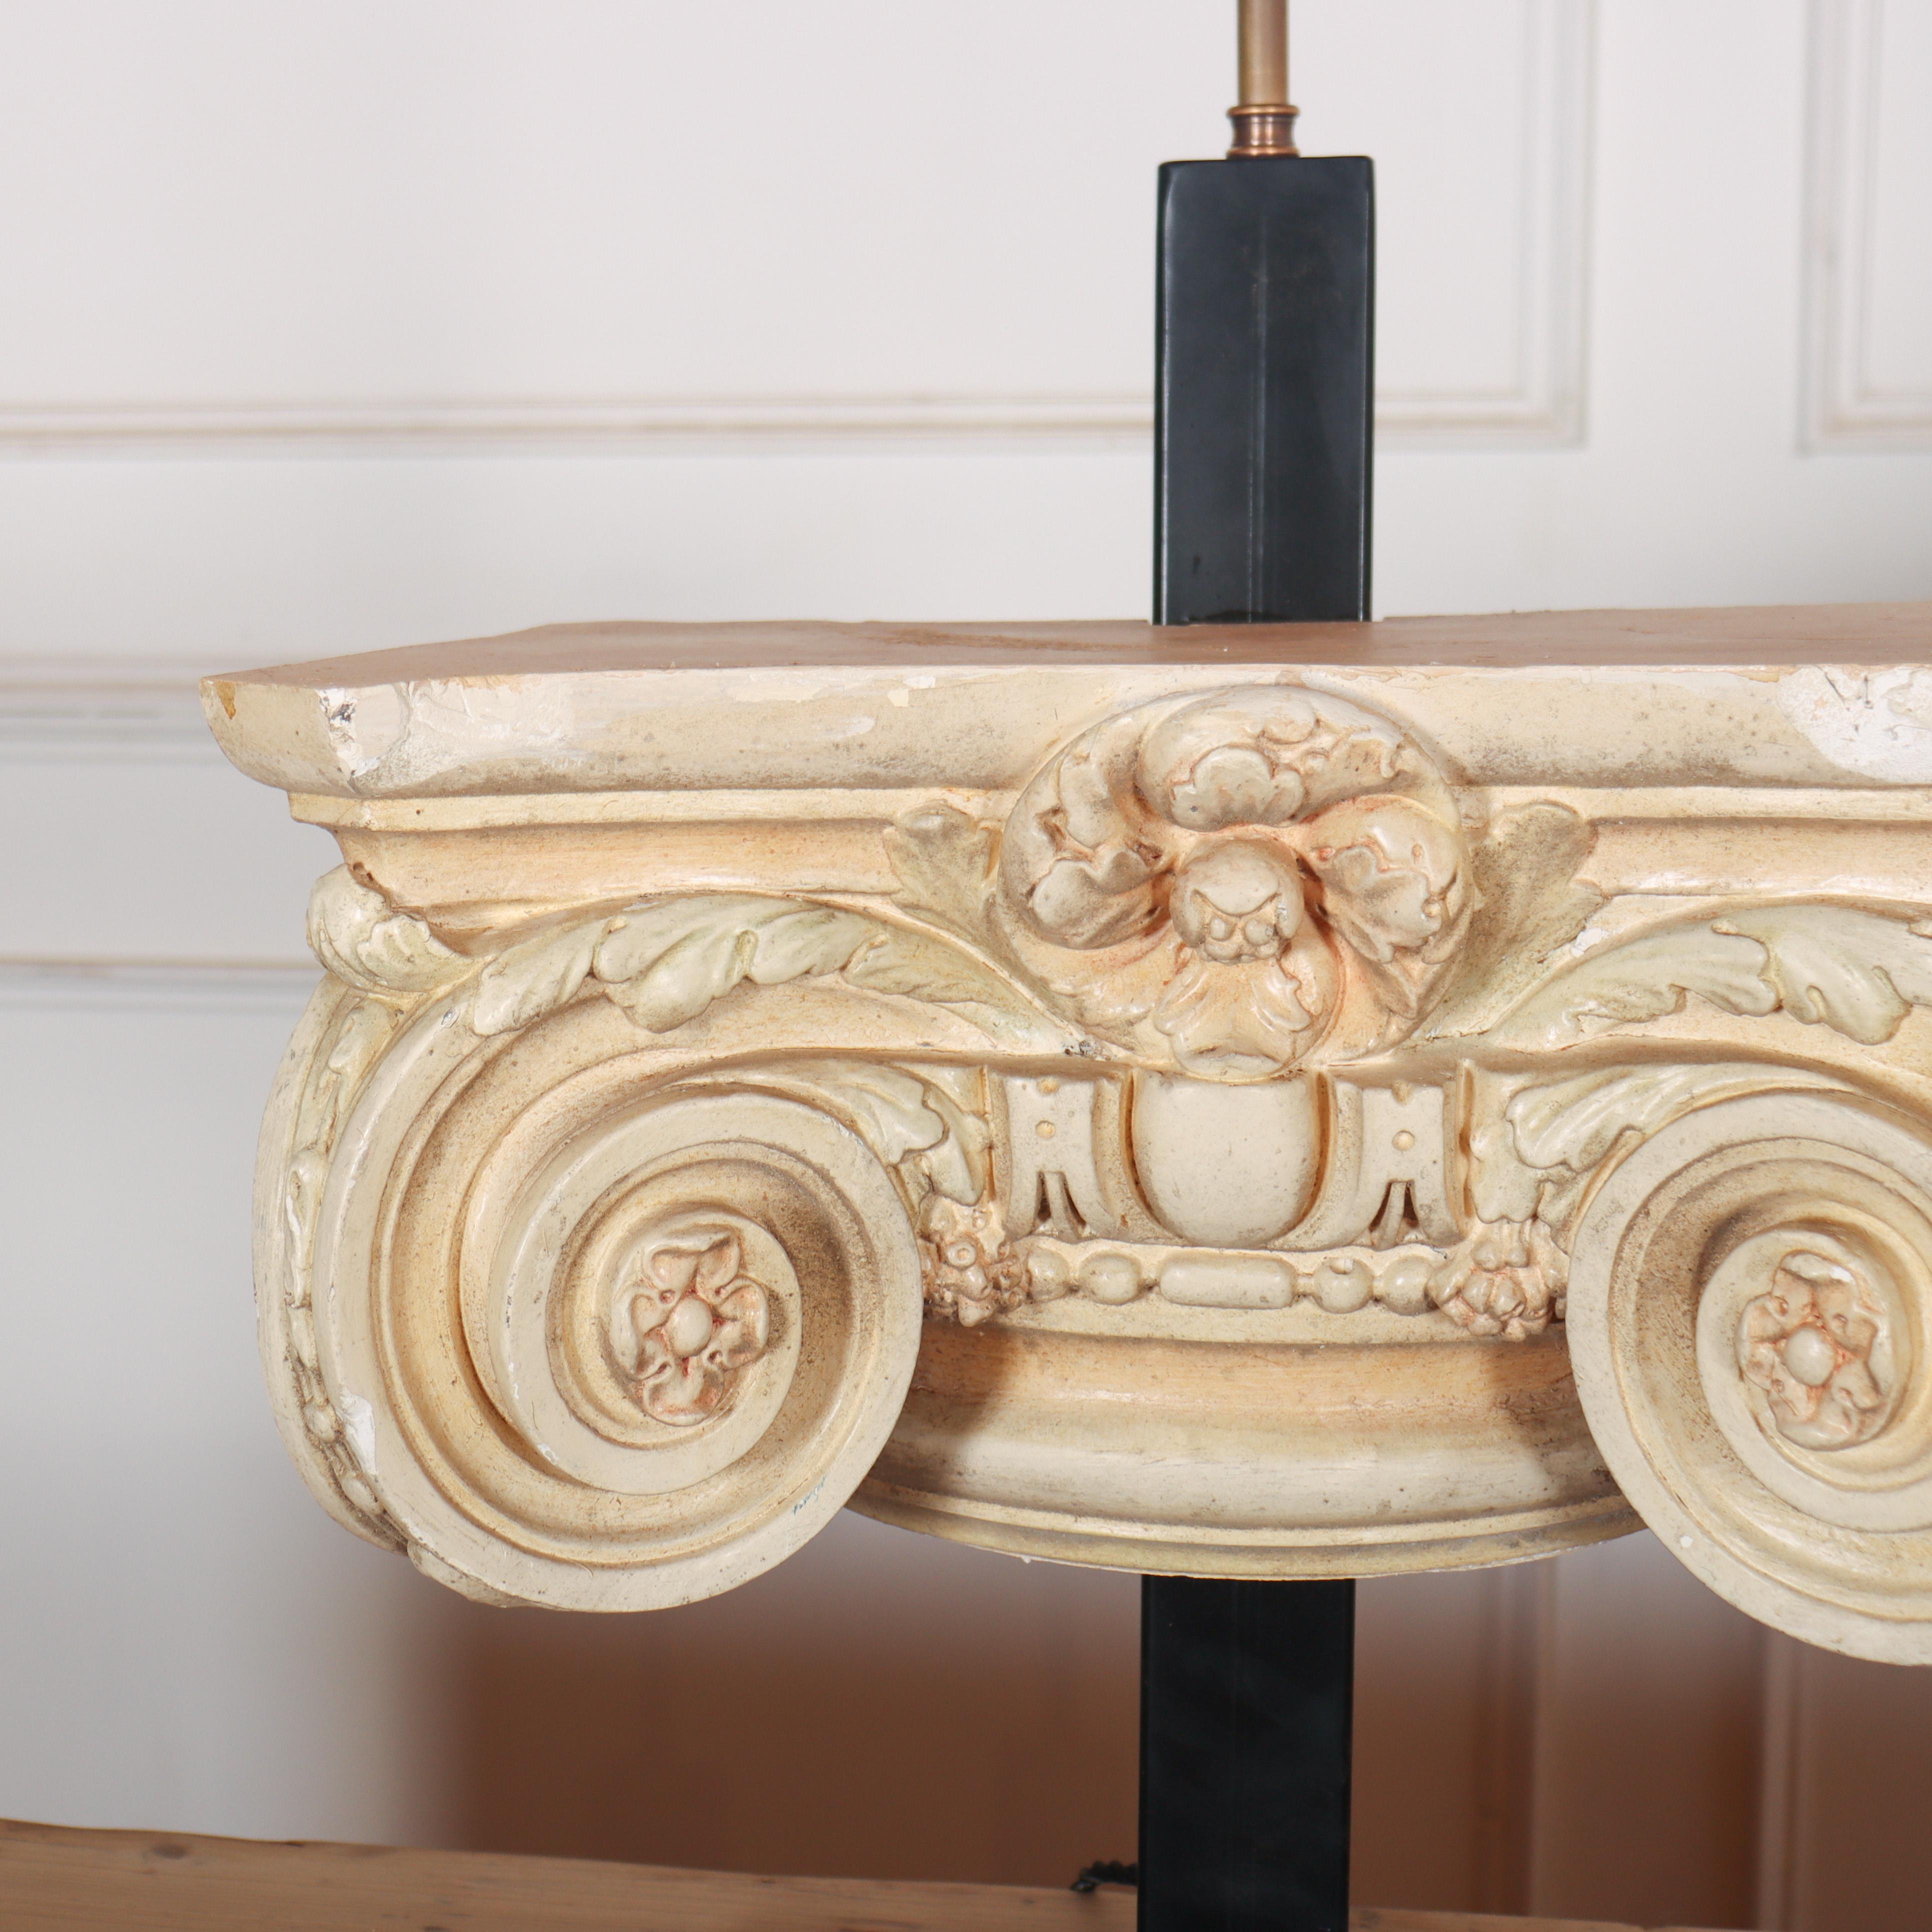 Merveilleuse paire de lampes de table avec décor de chapiteau en plâtre et un câble tressé de 2m de long. 1920.

(La hauteur ci-dessous est mesurée jusqu'à la douille de l'ampoule)

Réf : B.

Référence : 8353

Dimensions
41 cm de large
8 pouces (20